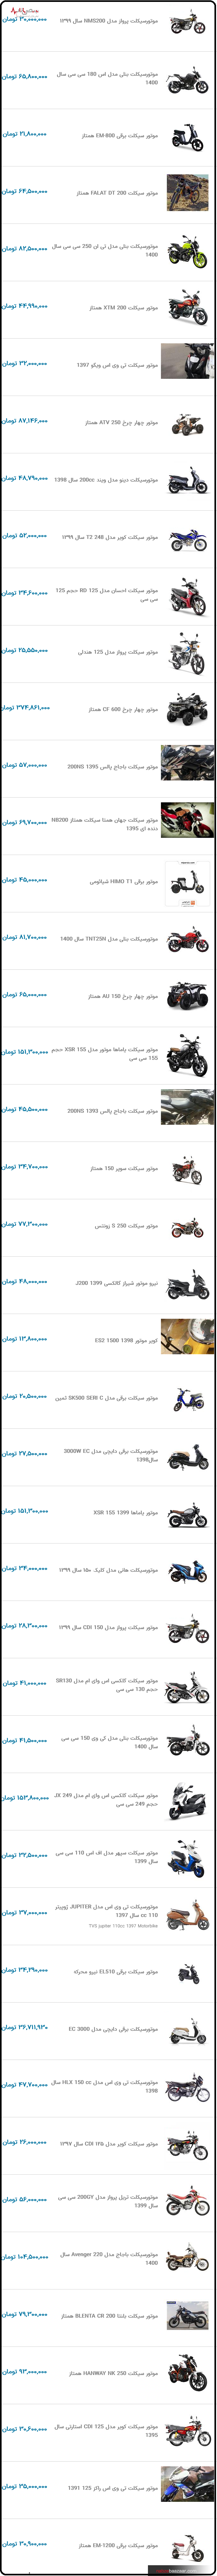 قیمت به روز موتورسیکلت در نبض بازار ایران ۱۹ دی ۱۴۰۰